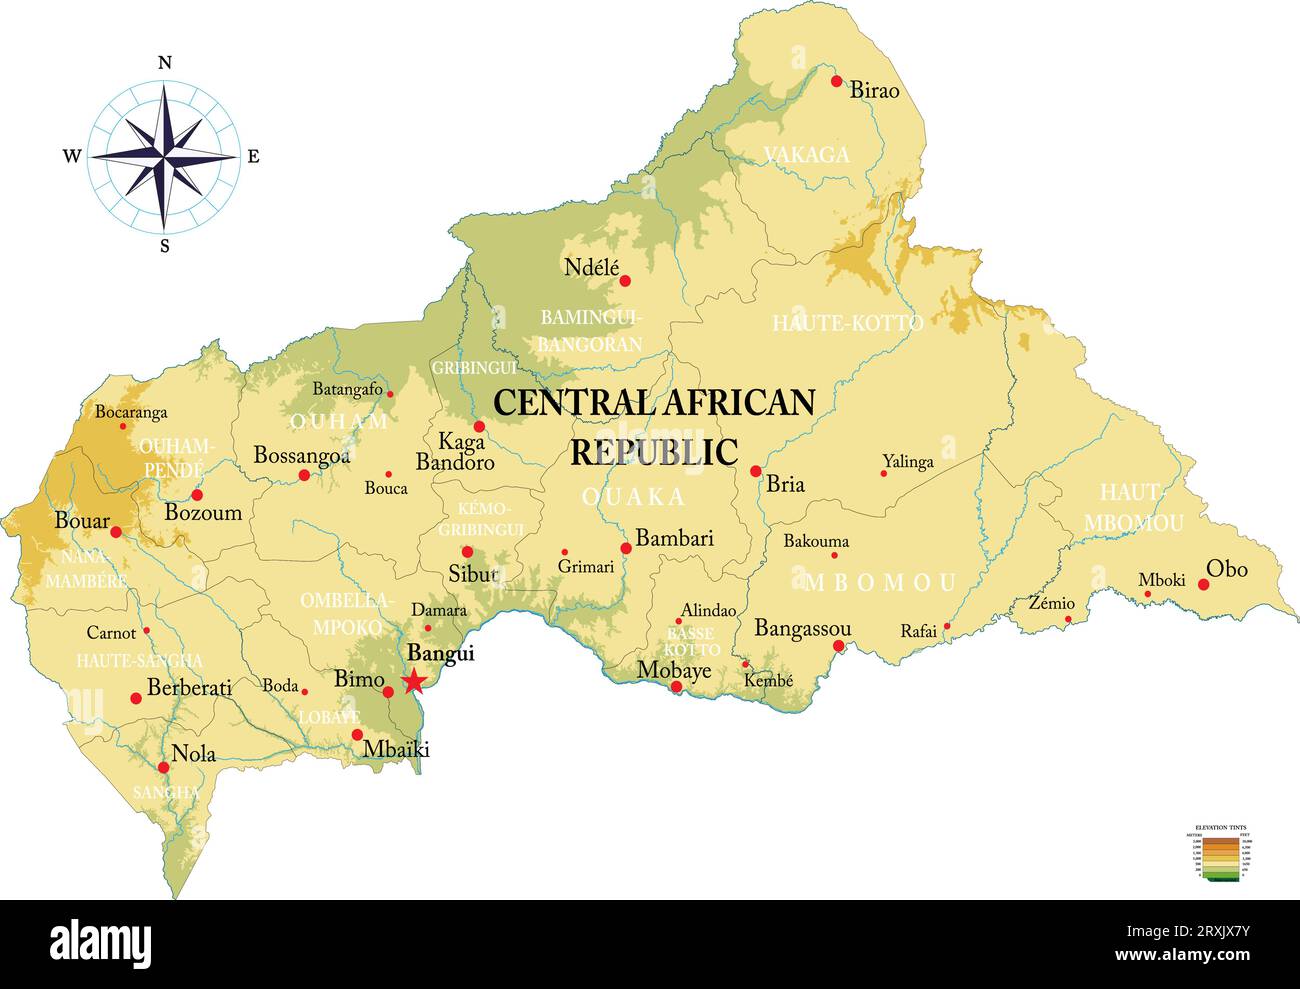 Sehr detaillierte physische Karte der Zentralafrikanischen Republik, im Vektorformat, mit allen Reliefformen, Regionen und Großstädten. Stock Vektor